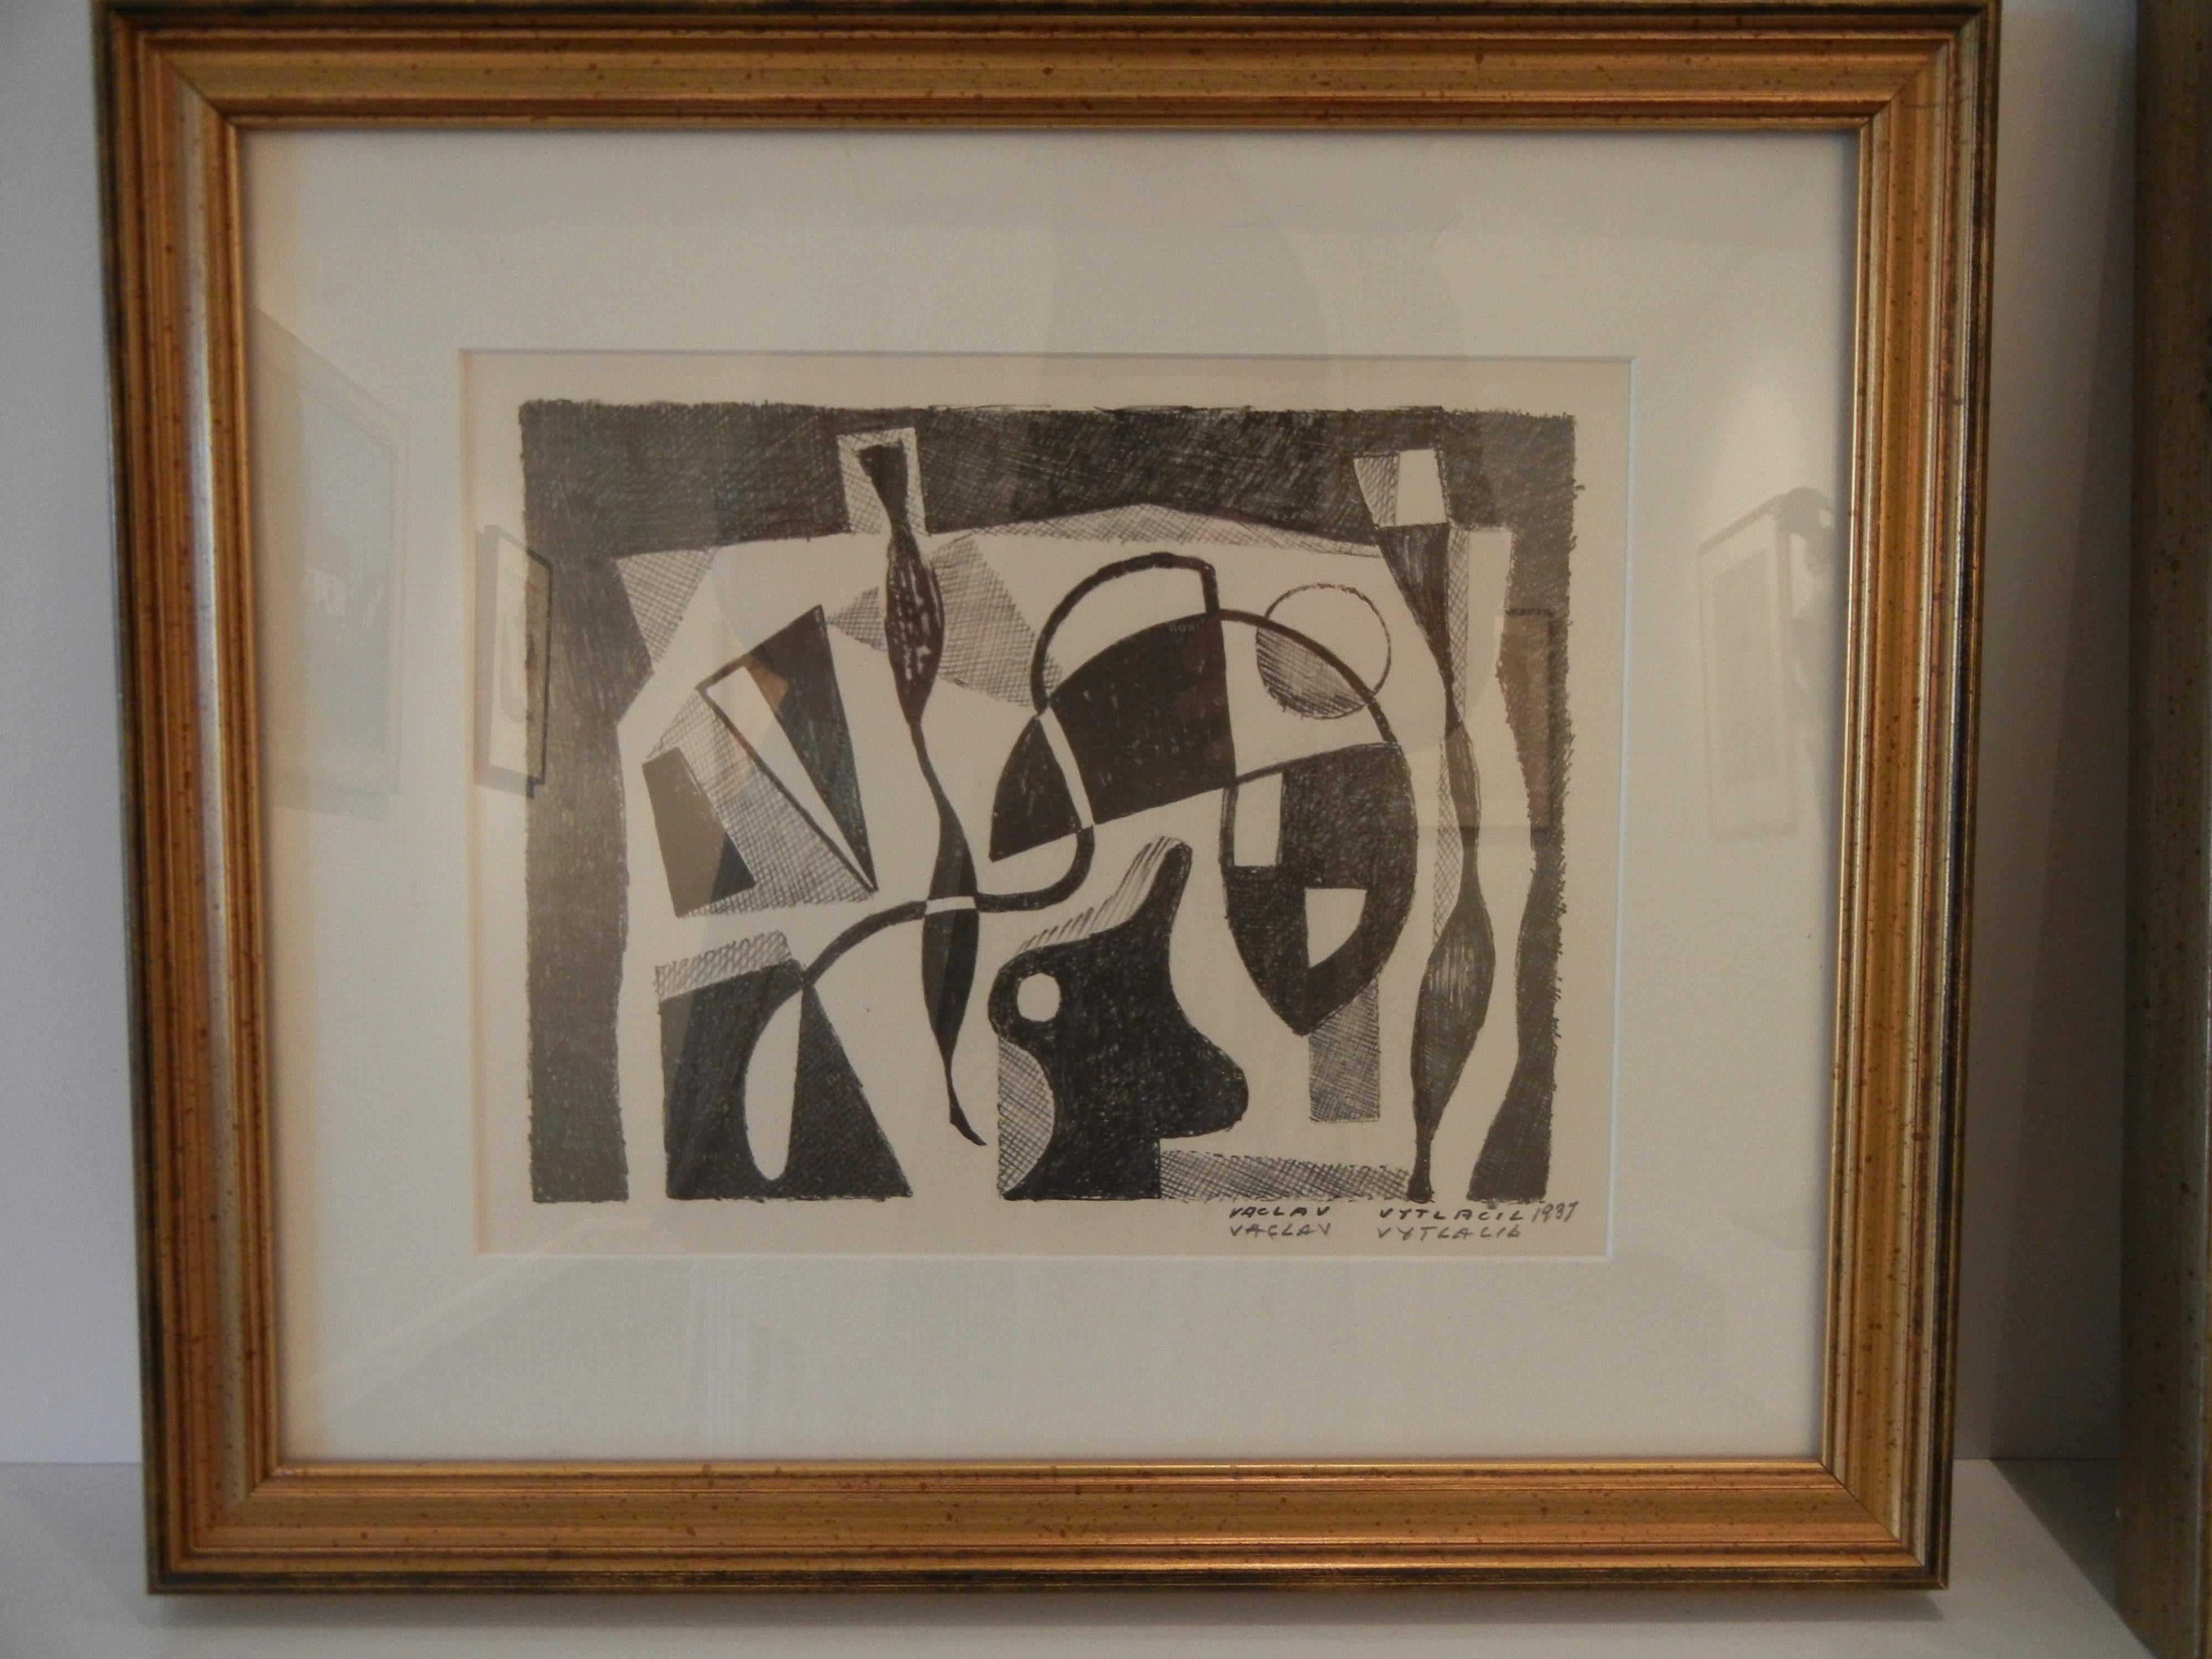 Vaclav Vytlacil, ein bedeutender amerikanischer Künstler und Pädagoge, spielte eine entscheidende Rolle bei der Verbreitung der Lehren von Hans Hofmann in den Vereinigten Staaten. An der Seite von Giganten der Moderne wie Picasso und Matisse